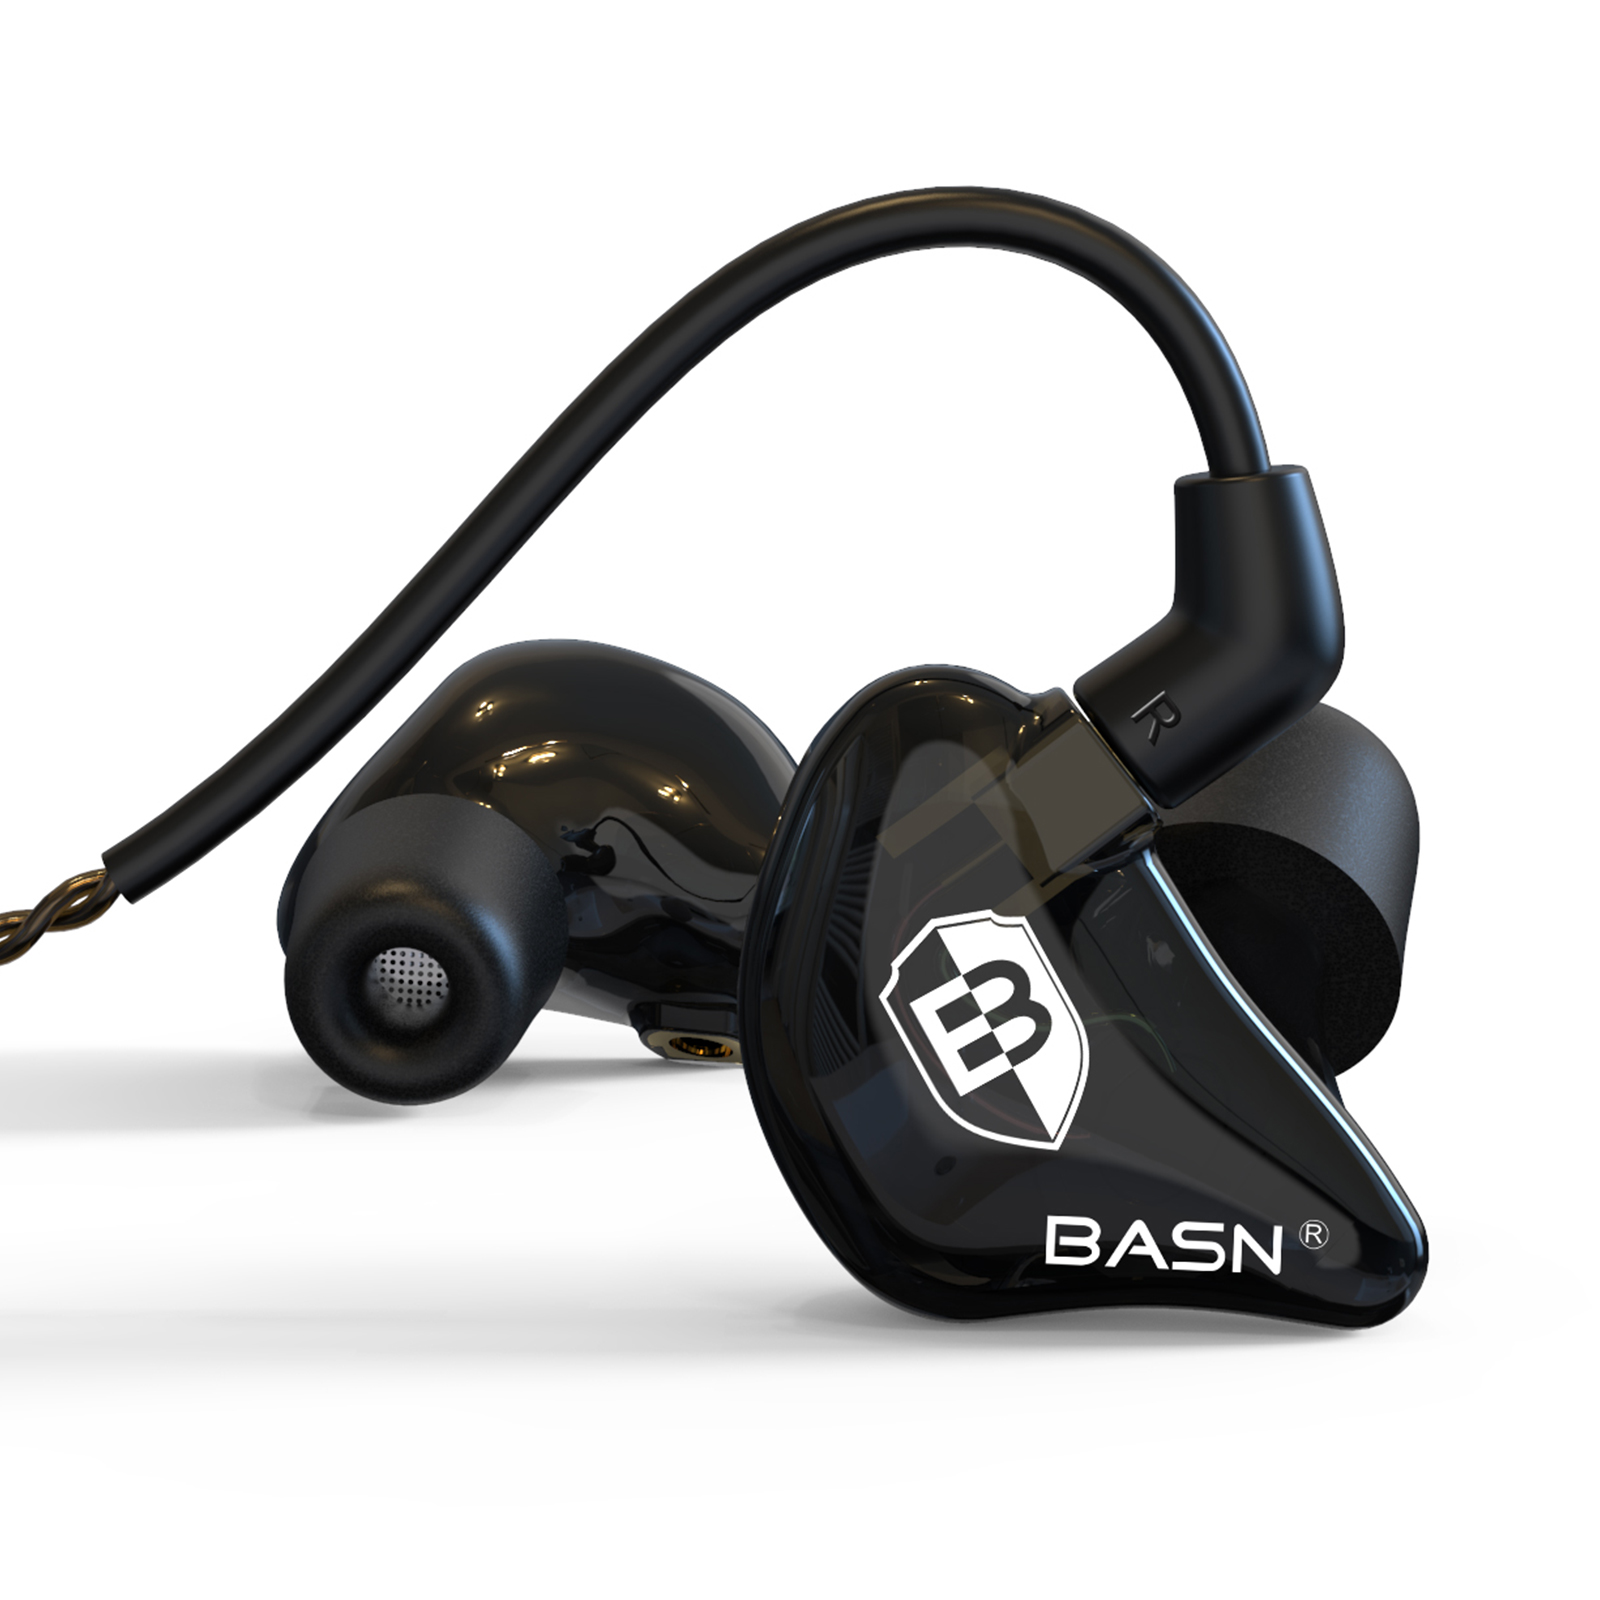 BASN Bsinger PRO Dual Dynamic Driver in-Ear Monitor Earphones